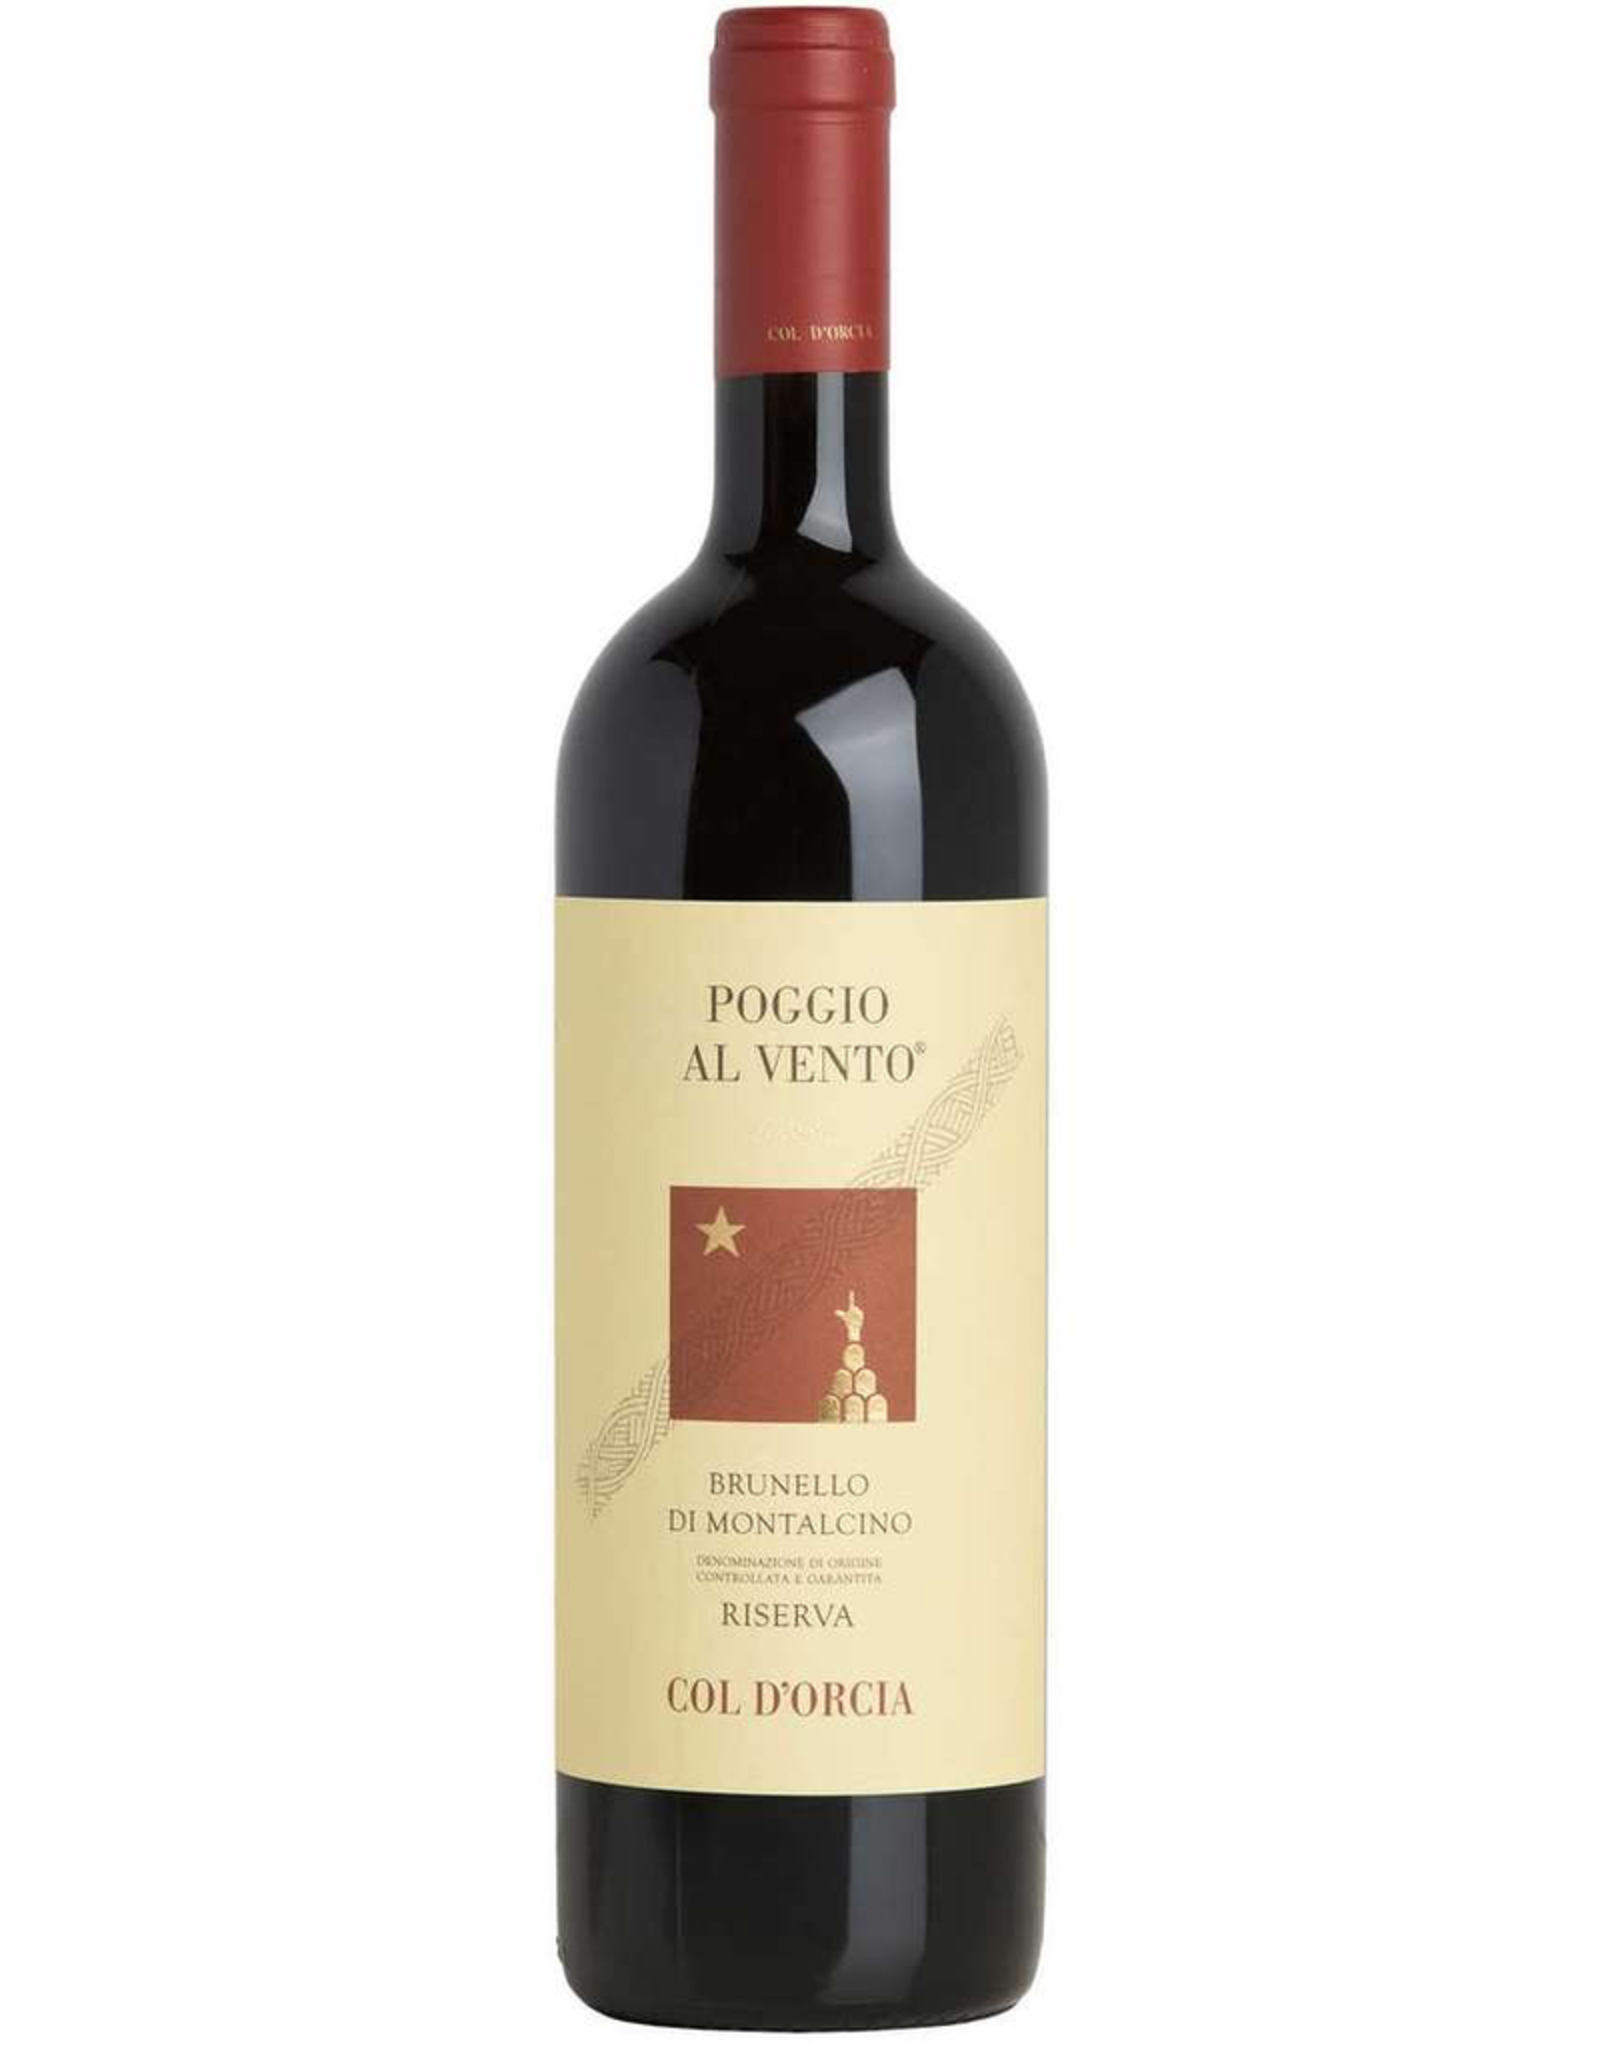 Red Wine 2001, Tenuta Col D'Orcia “Poggio al Vento” Brunello di Montalcino Riserva, Sangiovese, Montalcino, Tuscany, Italy, 14.5% Alc, CT92.8